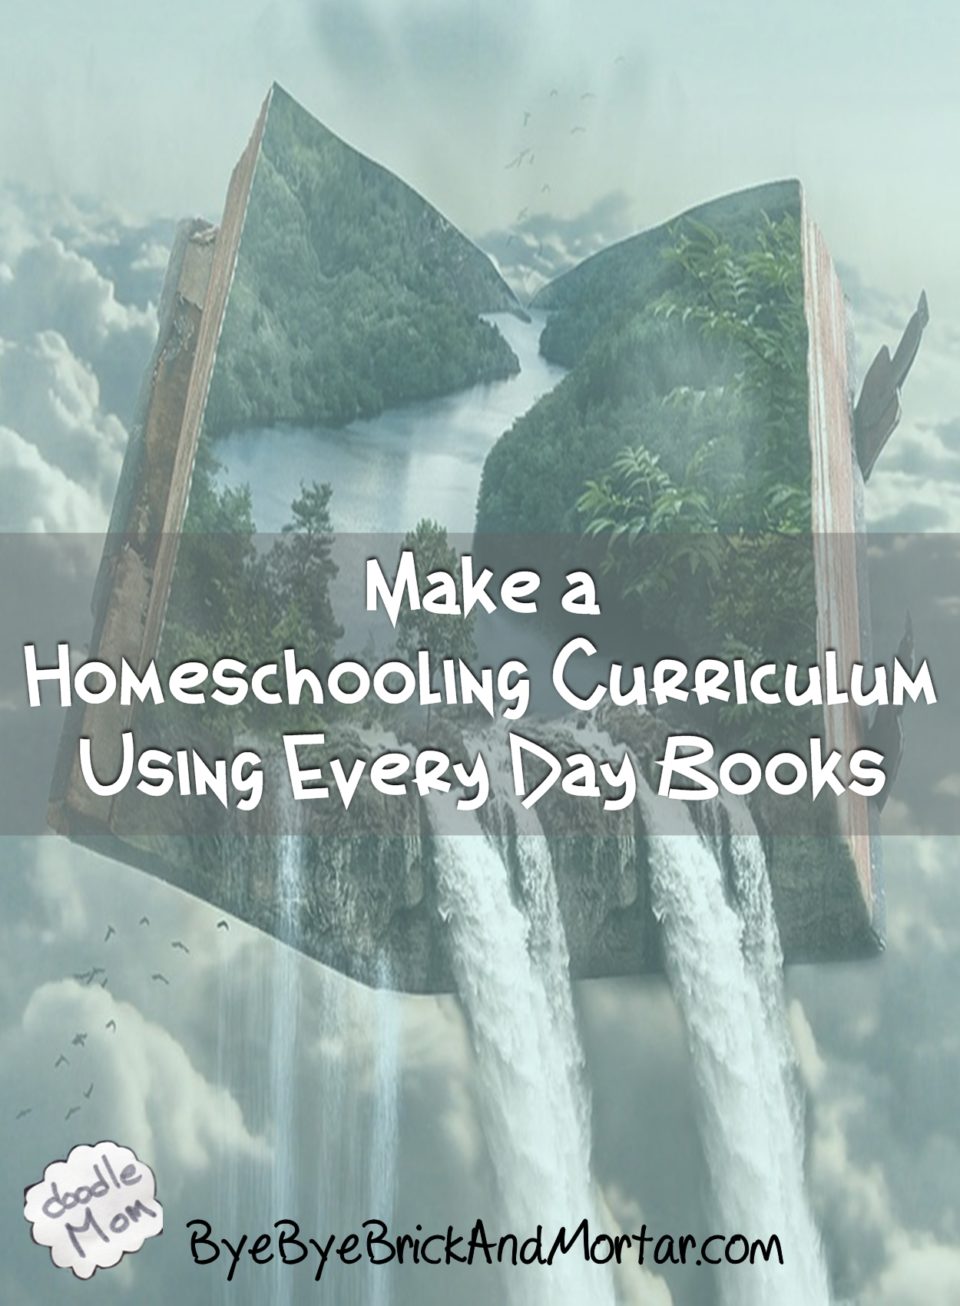 Make a Homeschooling Curriculum